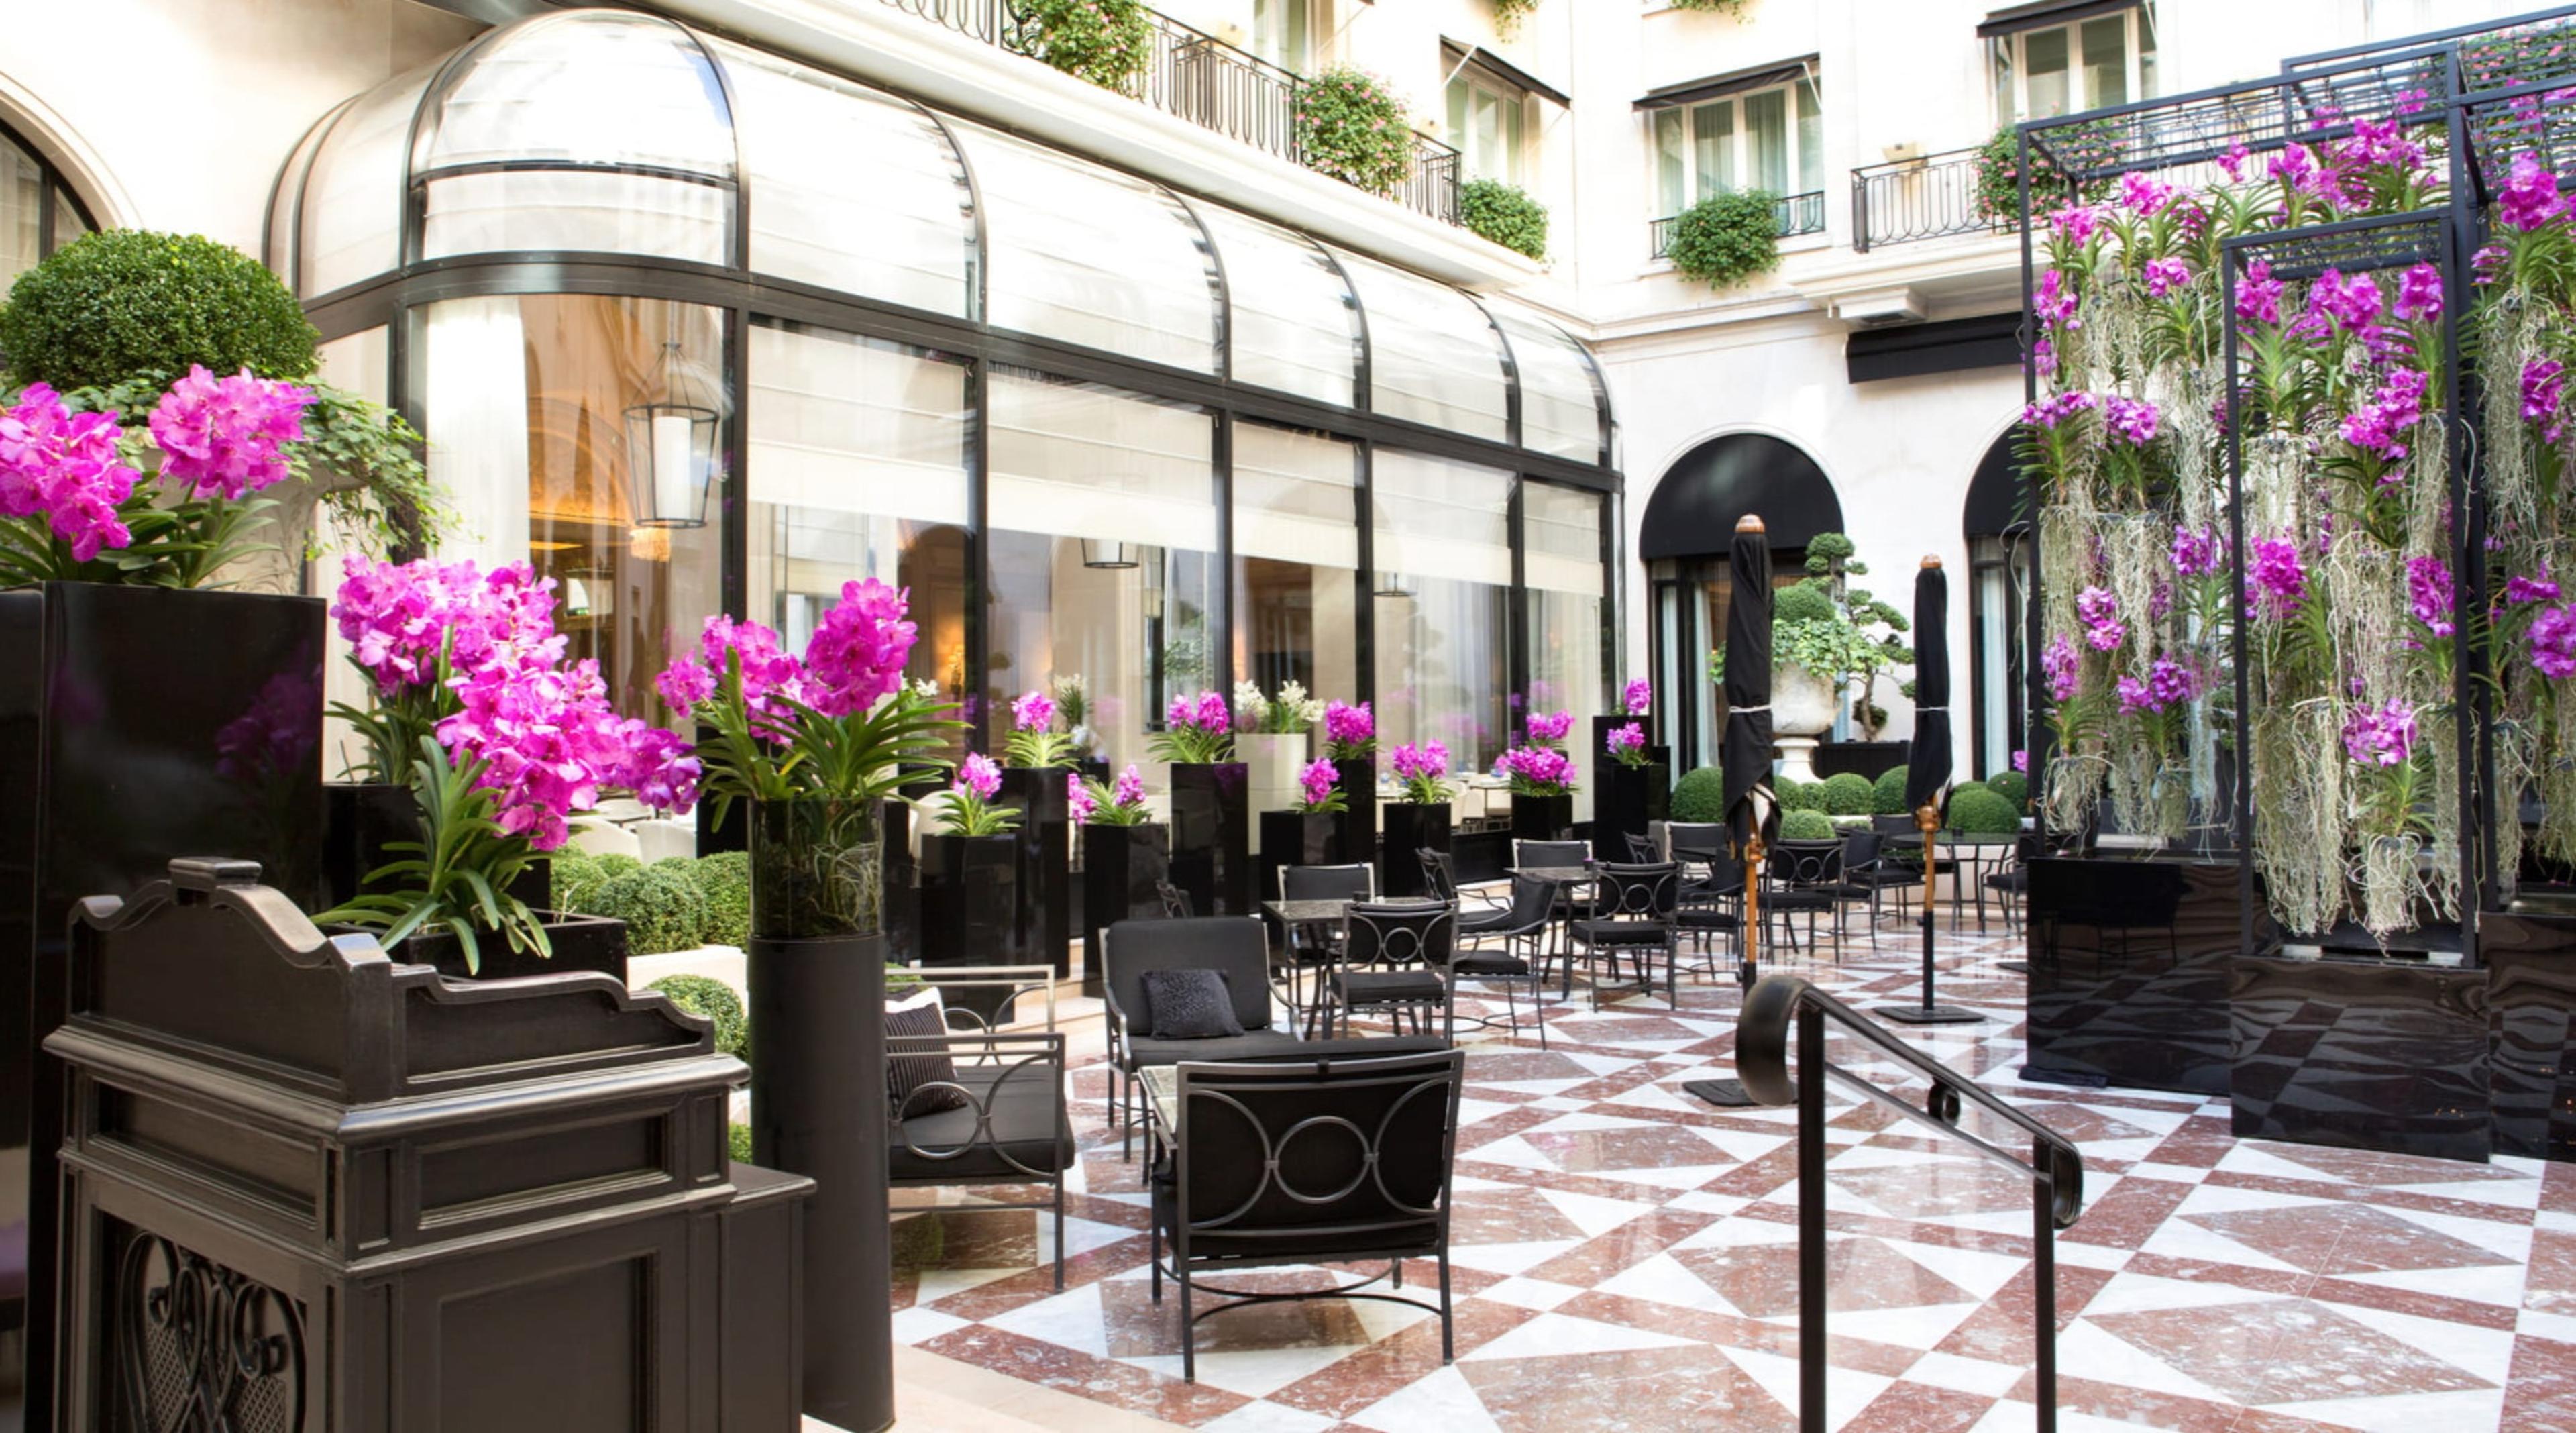 Four Seasons Hotel George V - Paris, France